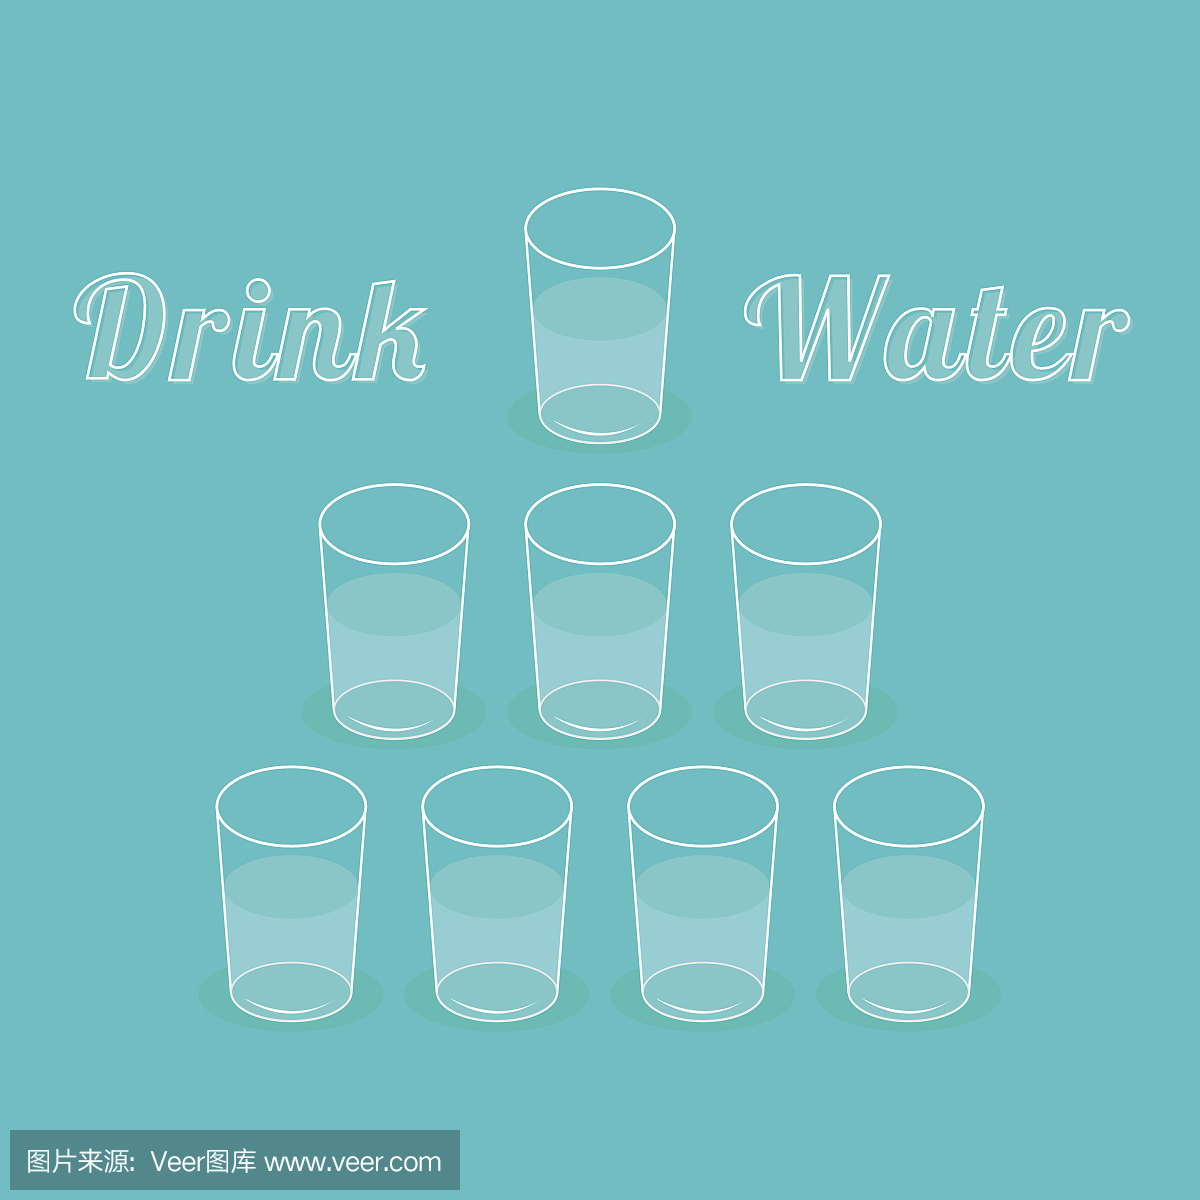 喝八杯水。健康的生活理念资料图。平面